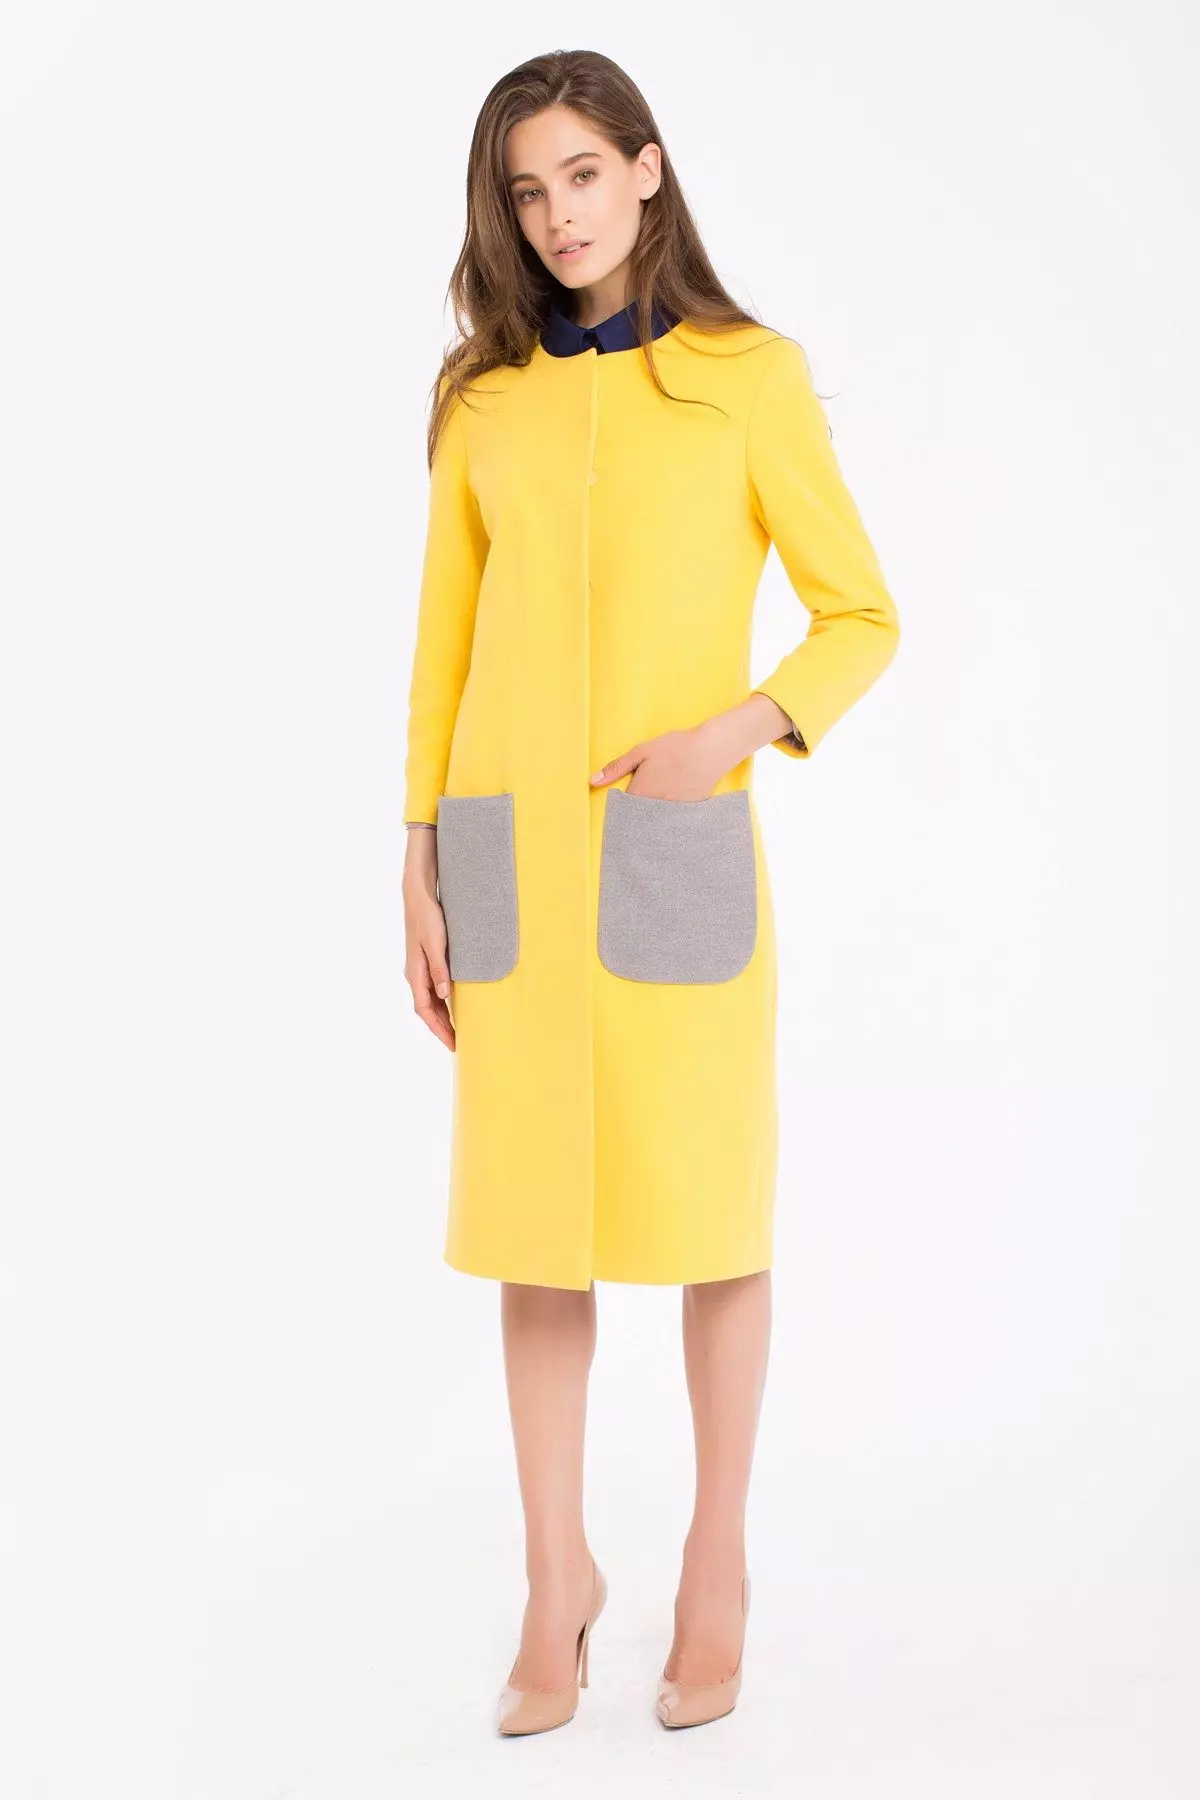 2021 abric groc (123 fotos): Què portar, el que forma la bufanda, capa de moda, bossa per cobrir groc, accessoris, groc clar 536_13